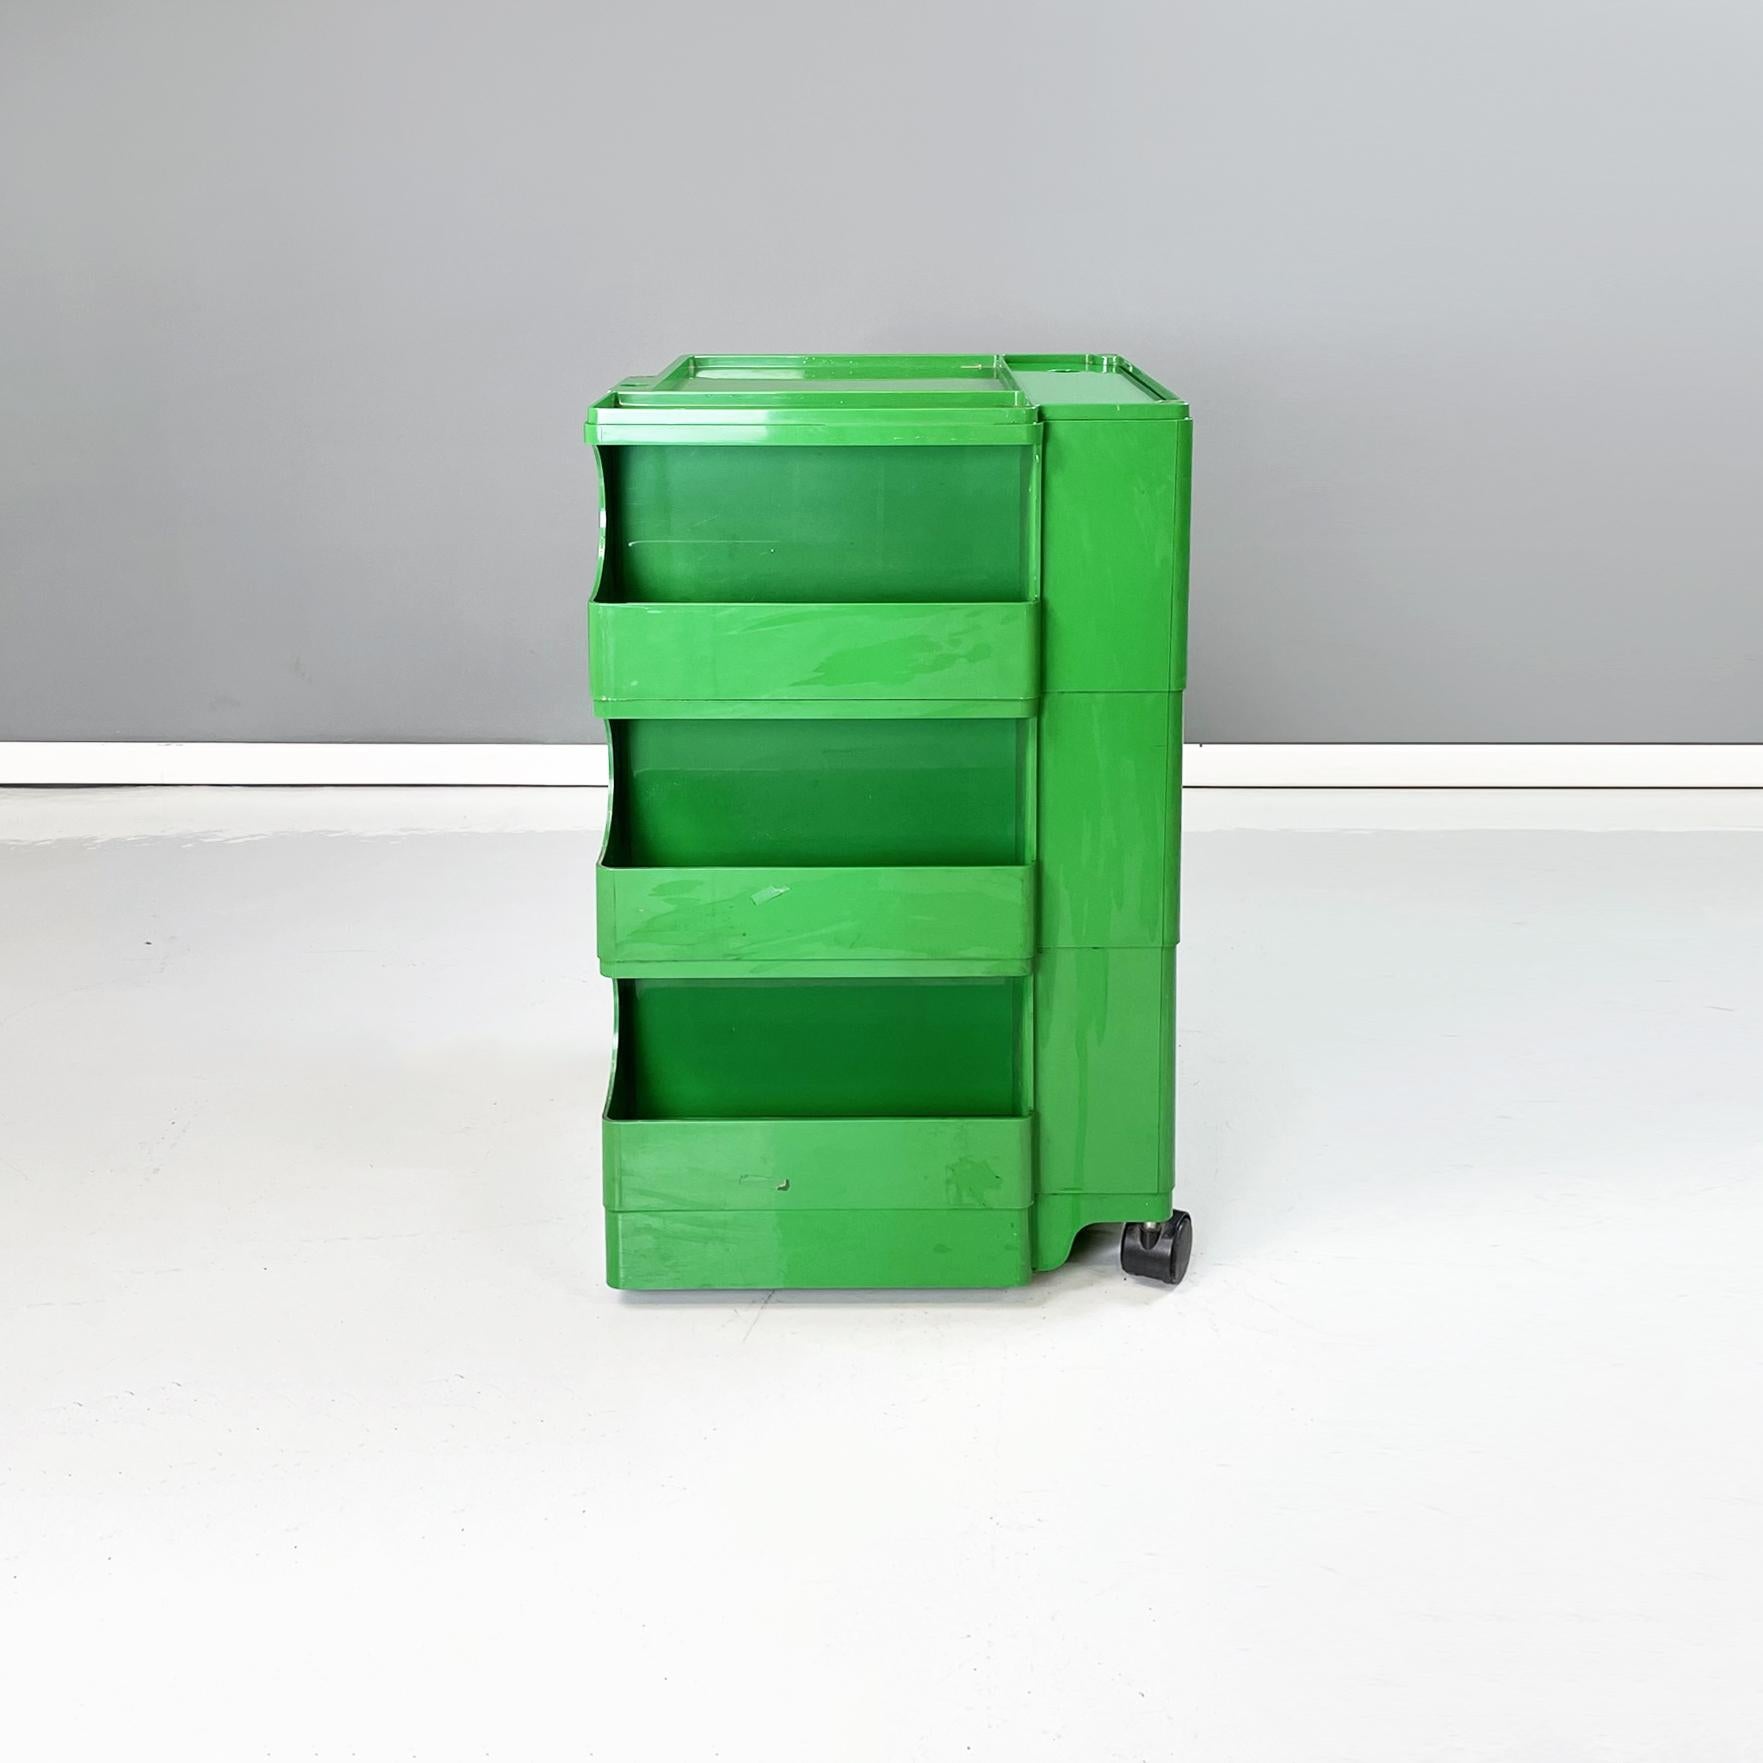 Italian Modern Green Plastic Cart Boby by Joe Colombo for Bieffeplast, 1968 1